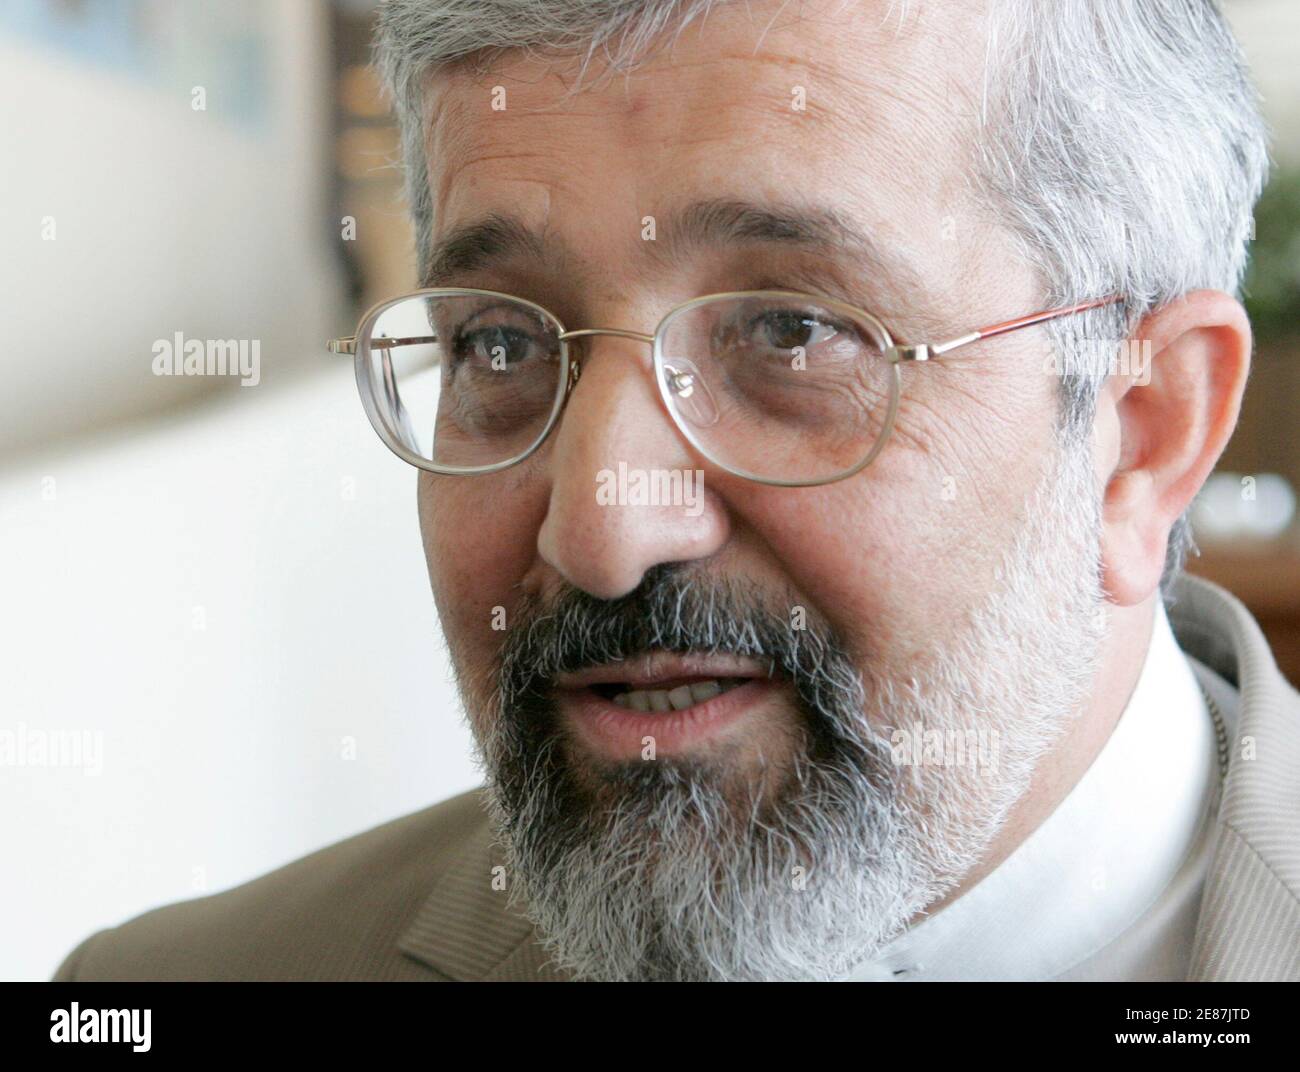 Ali Asghar Soltanieh, Botschafter der Internationalen Atomenergiebehörde Irans (IAEA), spricht mit Journalisten während einer Sitzung des Gouverneursrates der IAEA am 13. Juni 2007 in Wien. Die UN-Atomaufwachung glaubt, dass der Iran bis zum Jahresende 8,000 Zentrifugen betreiben könnte, die Uran anreichern, was ein erhebliches Risiko für Atombomben darstellt, sagen Diplomaten, obwohl nicht jeder damit einverstanden ist. REUTERS/Herwig Prammer (ÖSTERREICH) Stockfoto